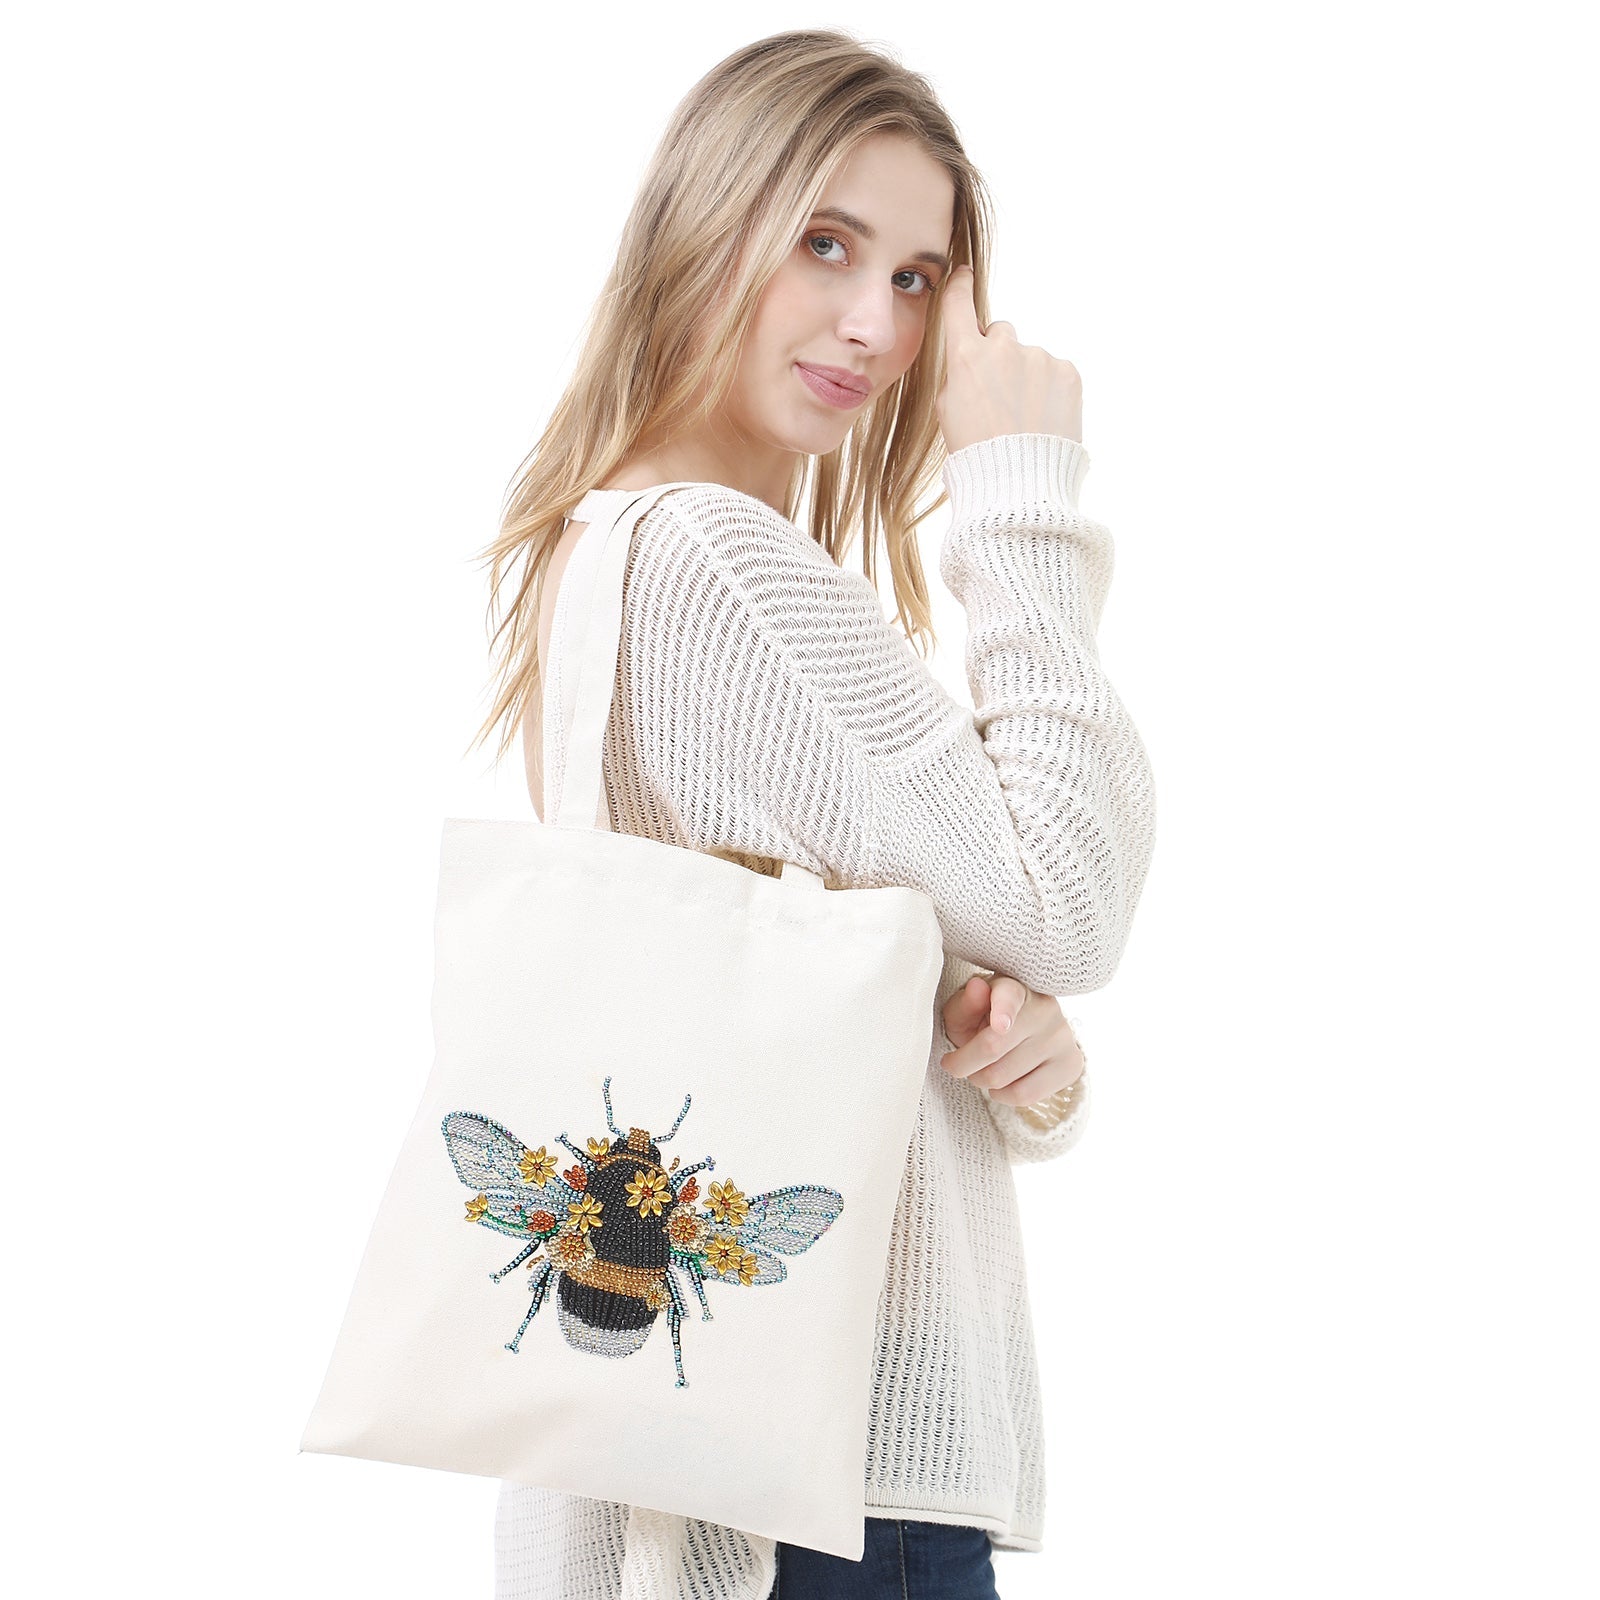 DIY Rhinestone Diamond Painting Bee Tote Bag